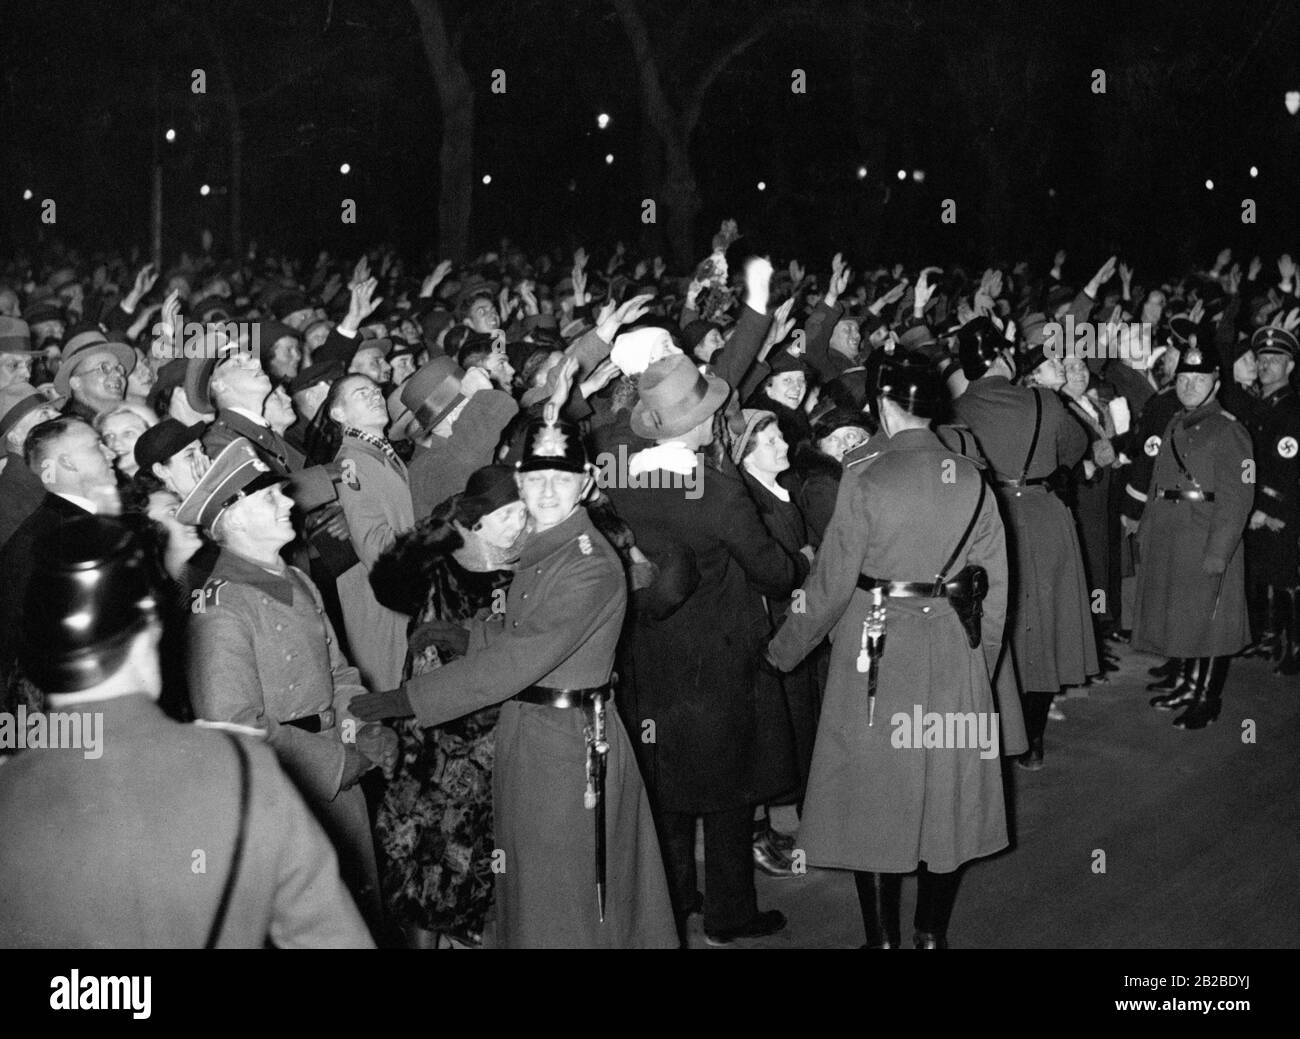 Anhänger grüßen Adolf Hitler um Mitternacht an Silvester. Viele von ihnen führen den Nazi-Salut zu seinen Ehren aus. Die Anordnung sichern Polizisten und Vertreter der Schutzstaffel SS. Stockfoto